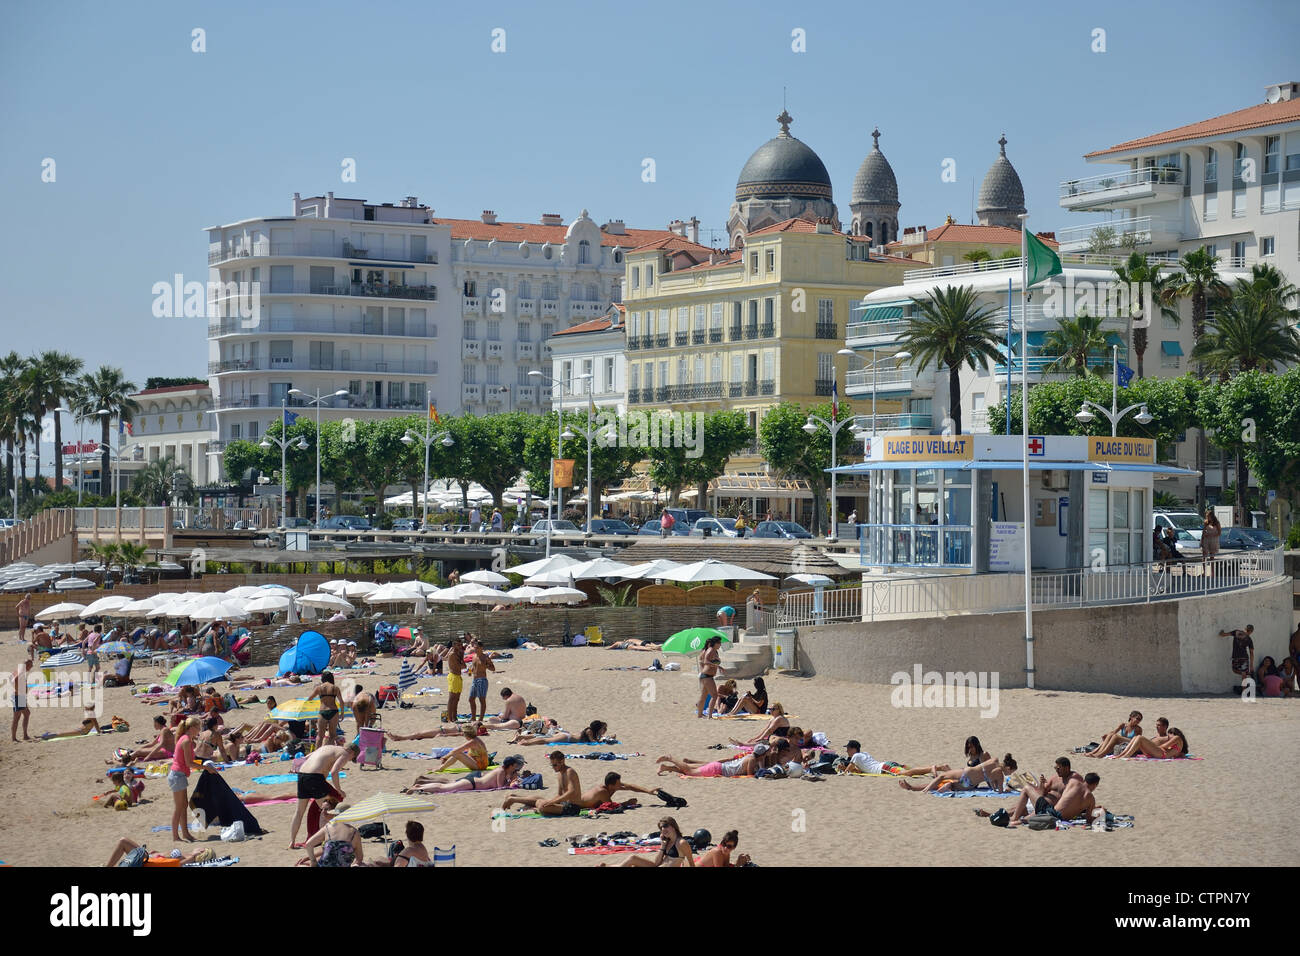 Beach and waterfront view, Saint-Raphaël, Côte d'Azur, Var Department, Provence-Alpes-Côte d'Azur, France Stock Photo